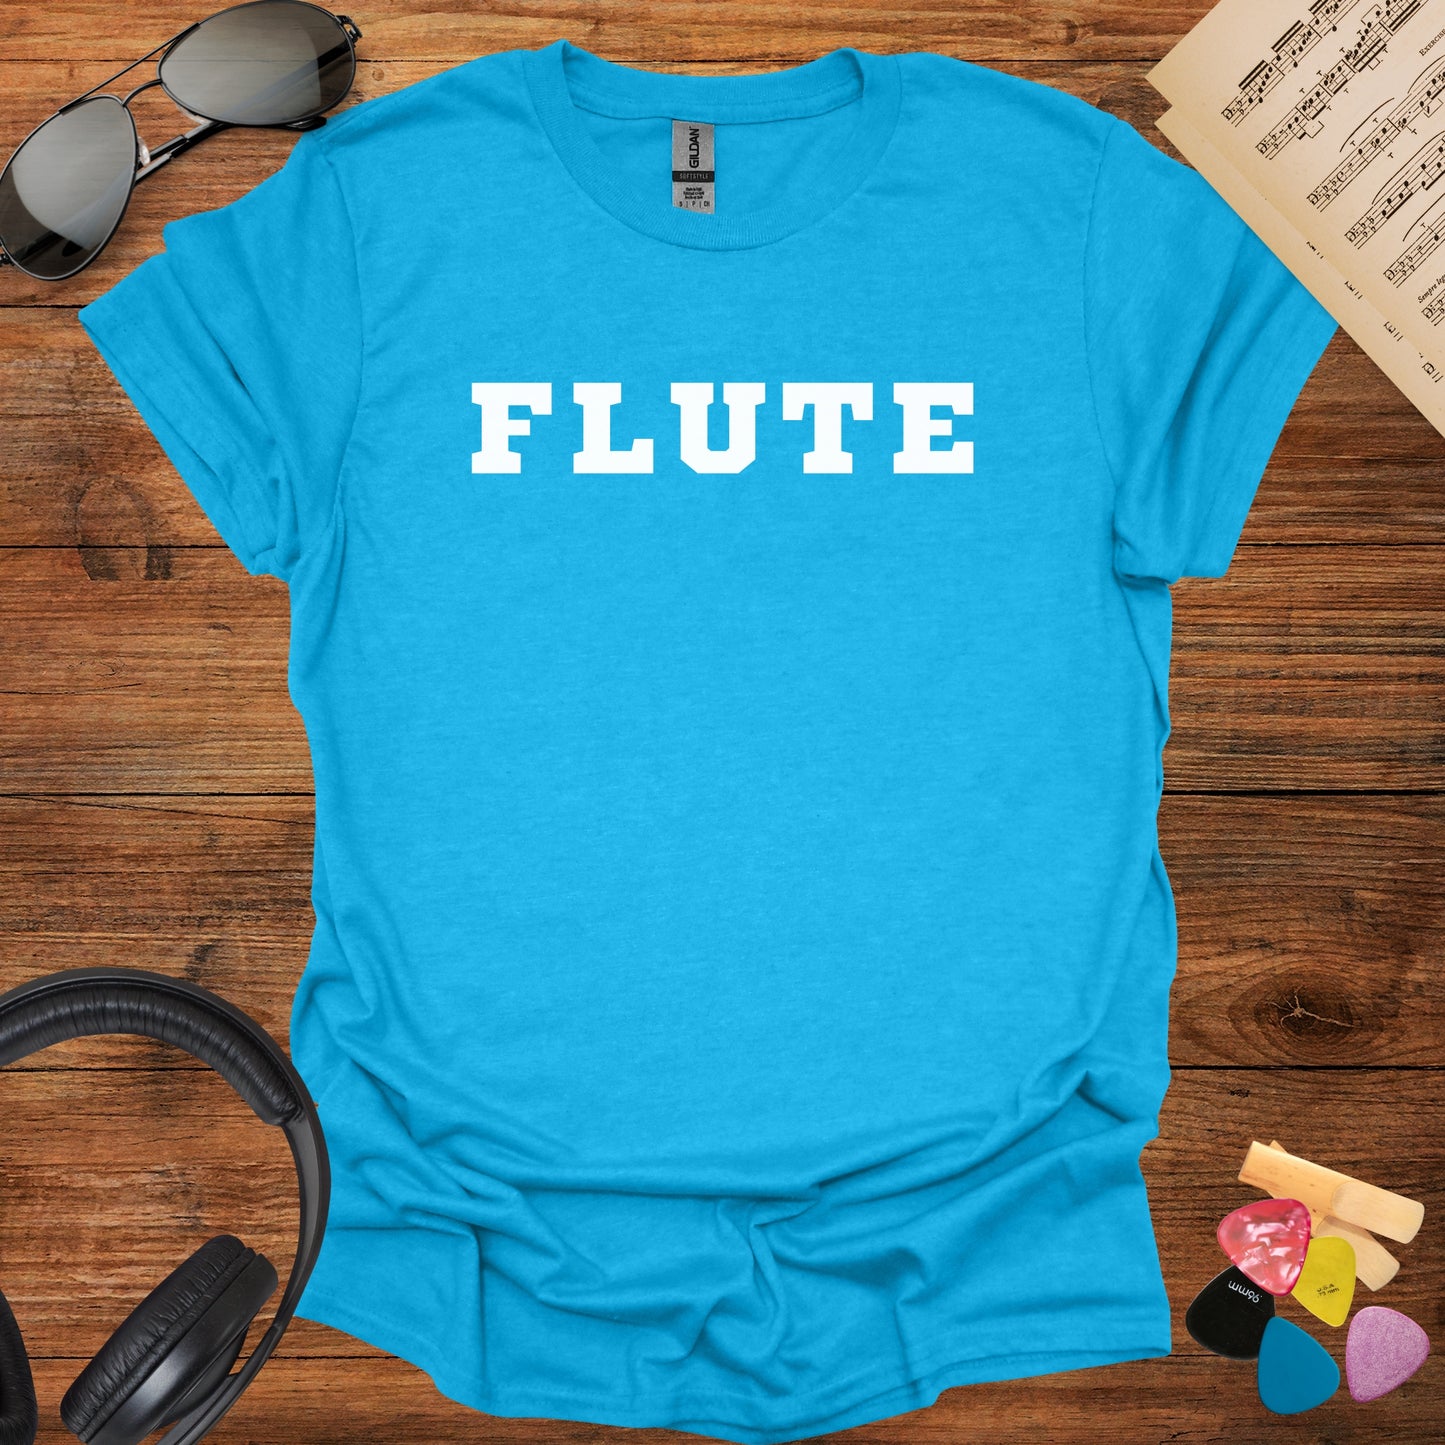 Flute T-Shirt